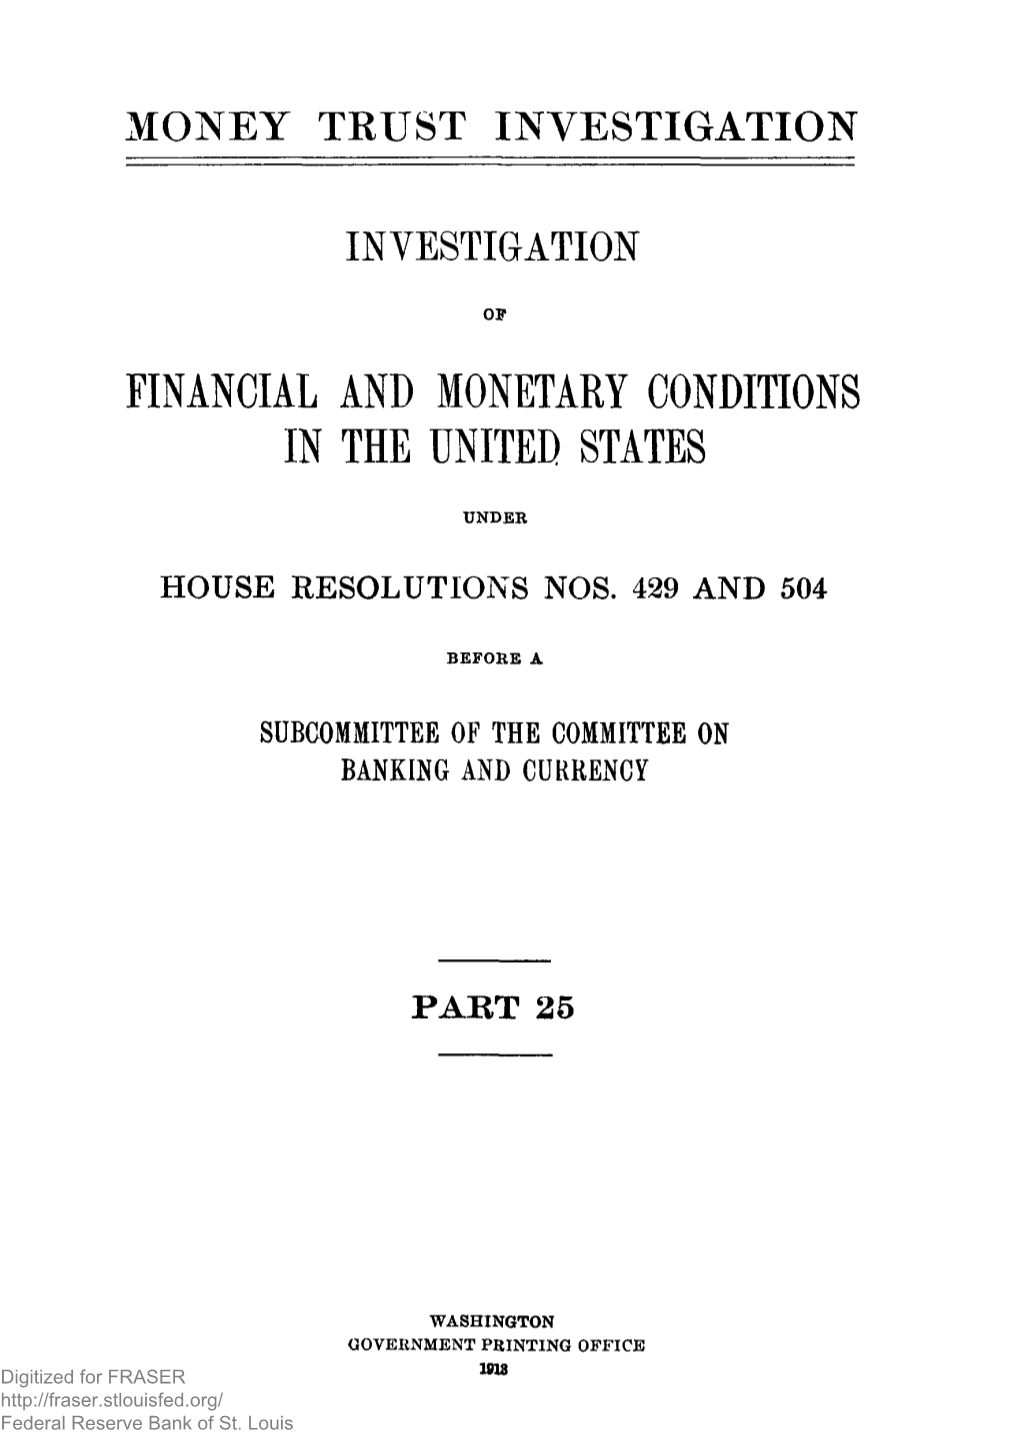 Money Trust Investigations. 1912-1913